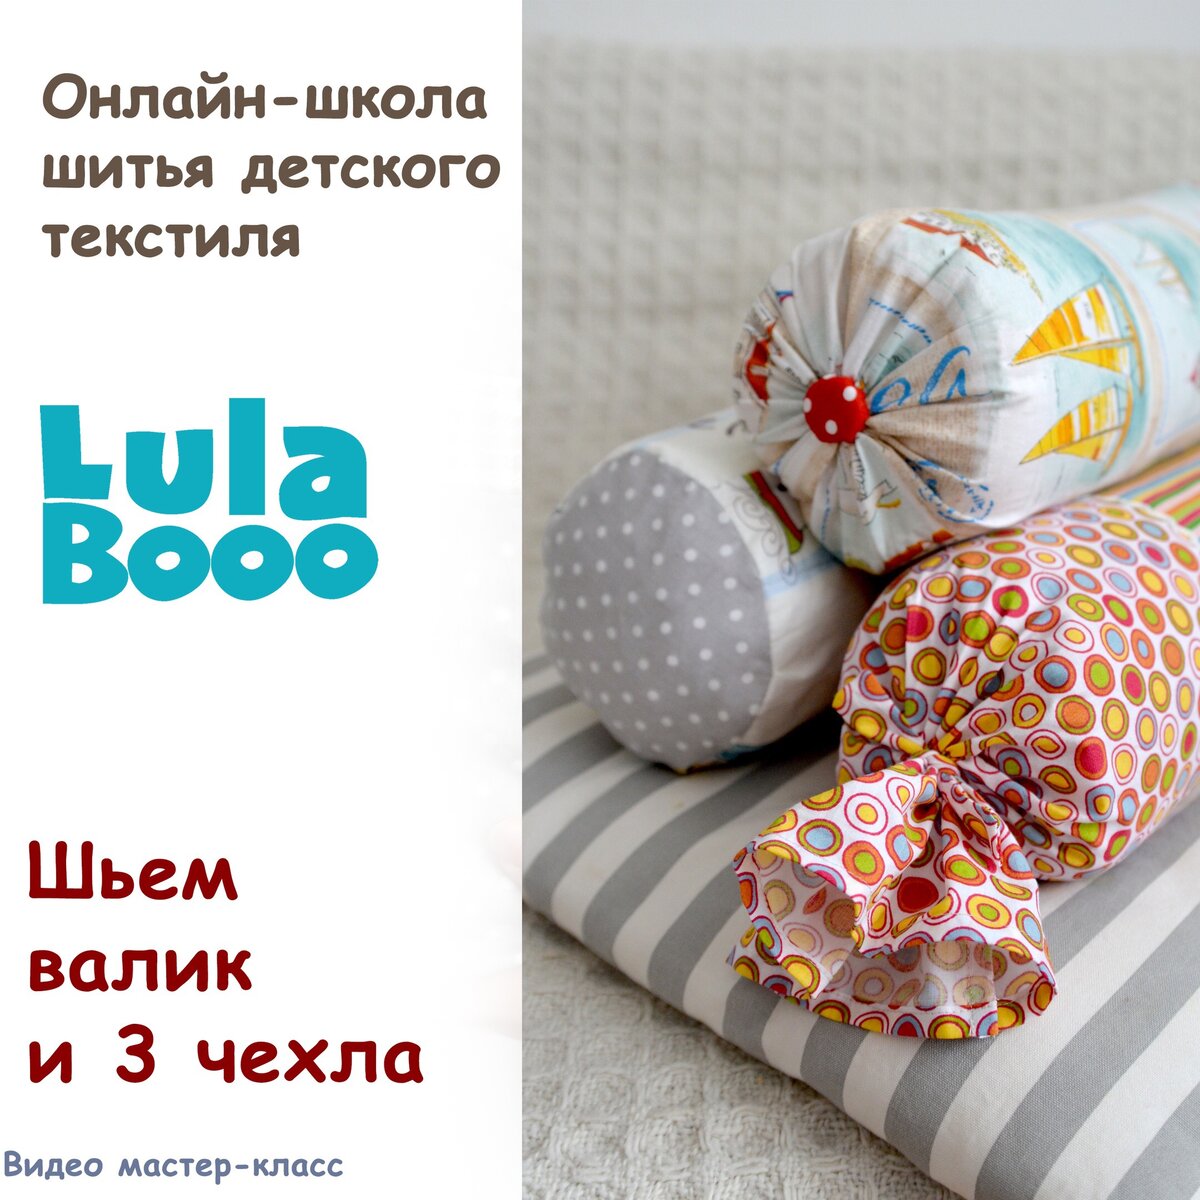 Бортики в кроватку для новорожденных своими руками. Выкройки и советы